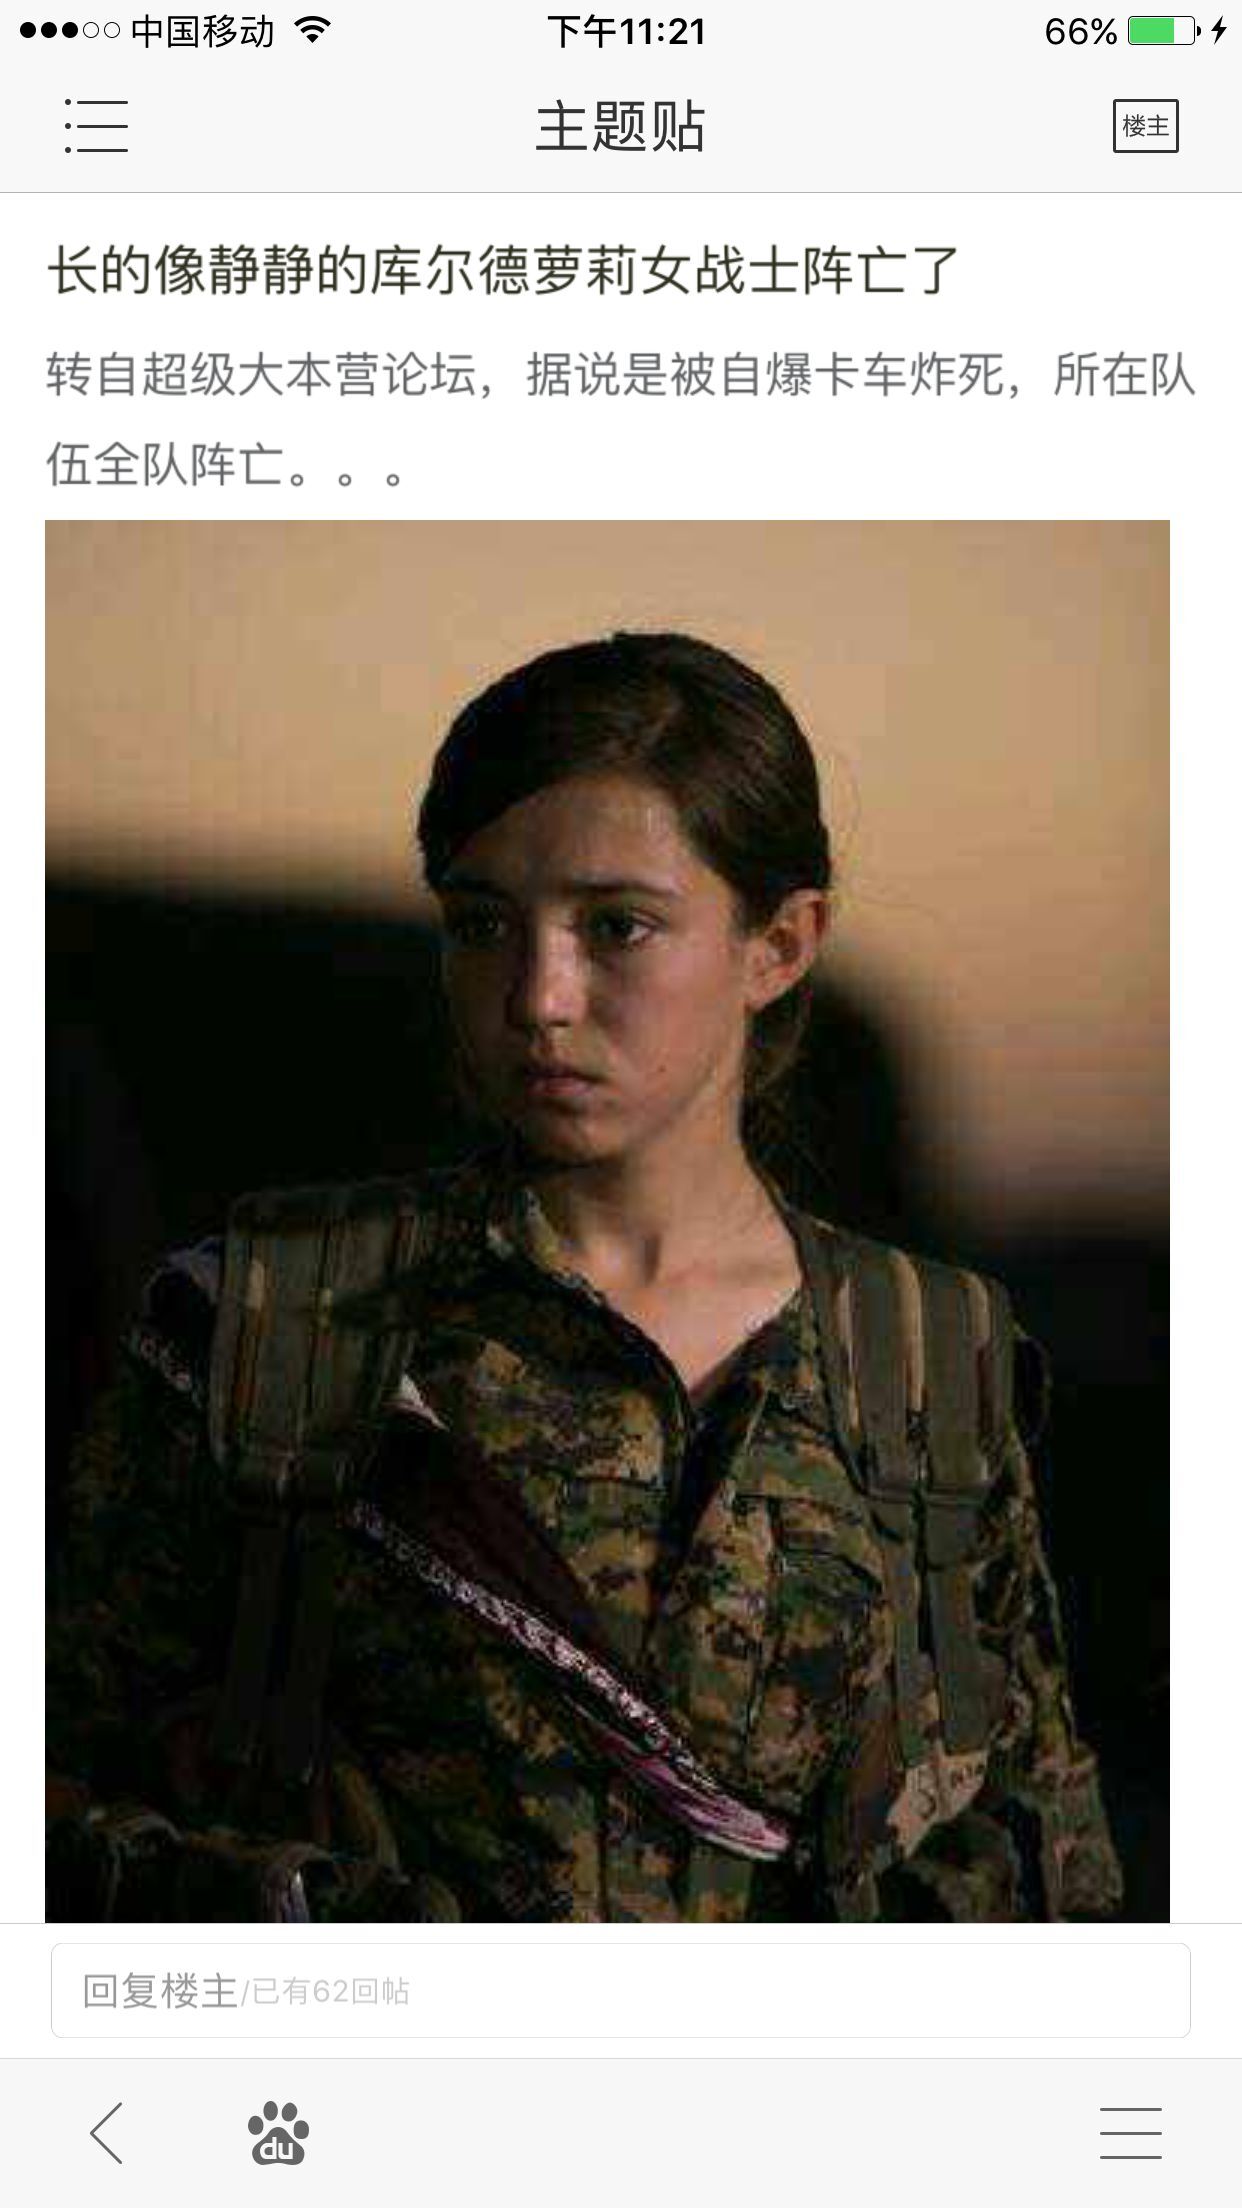 库尔德女兵牺牲图片